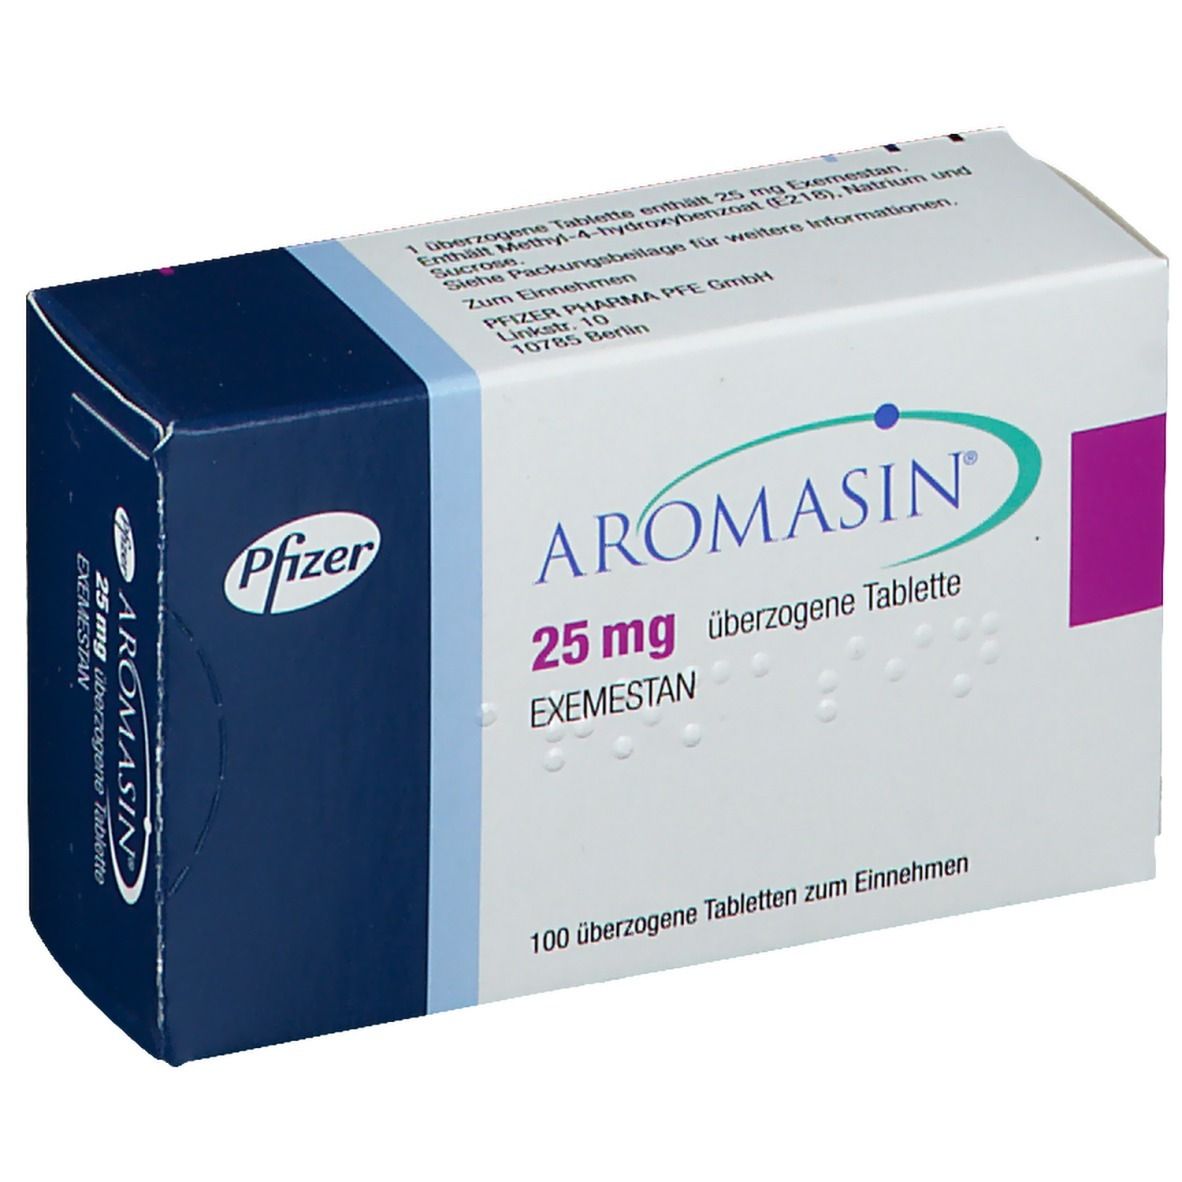 Aromasin 25mg - Thuốc điều trị ung thư vú hiệu quả của Italy